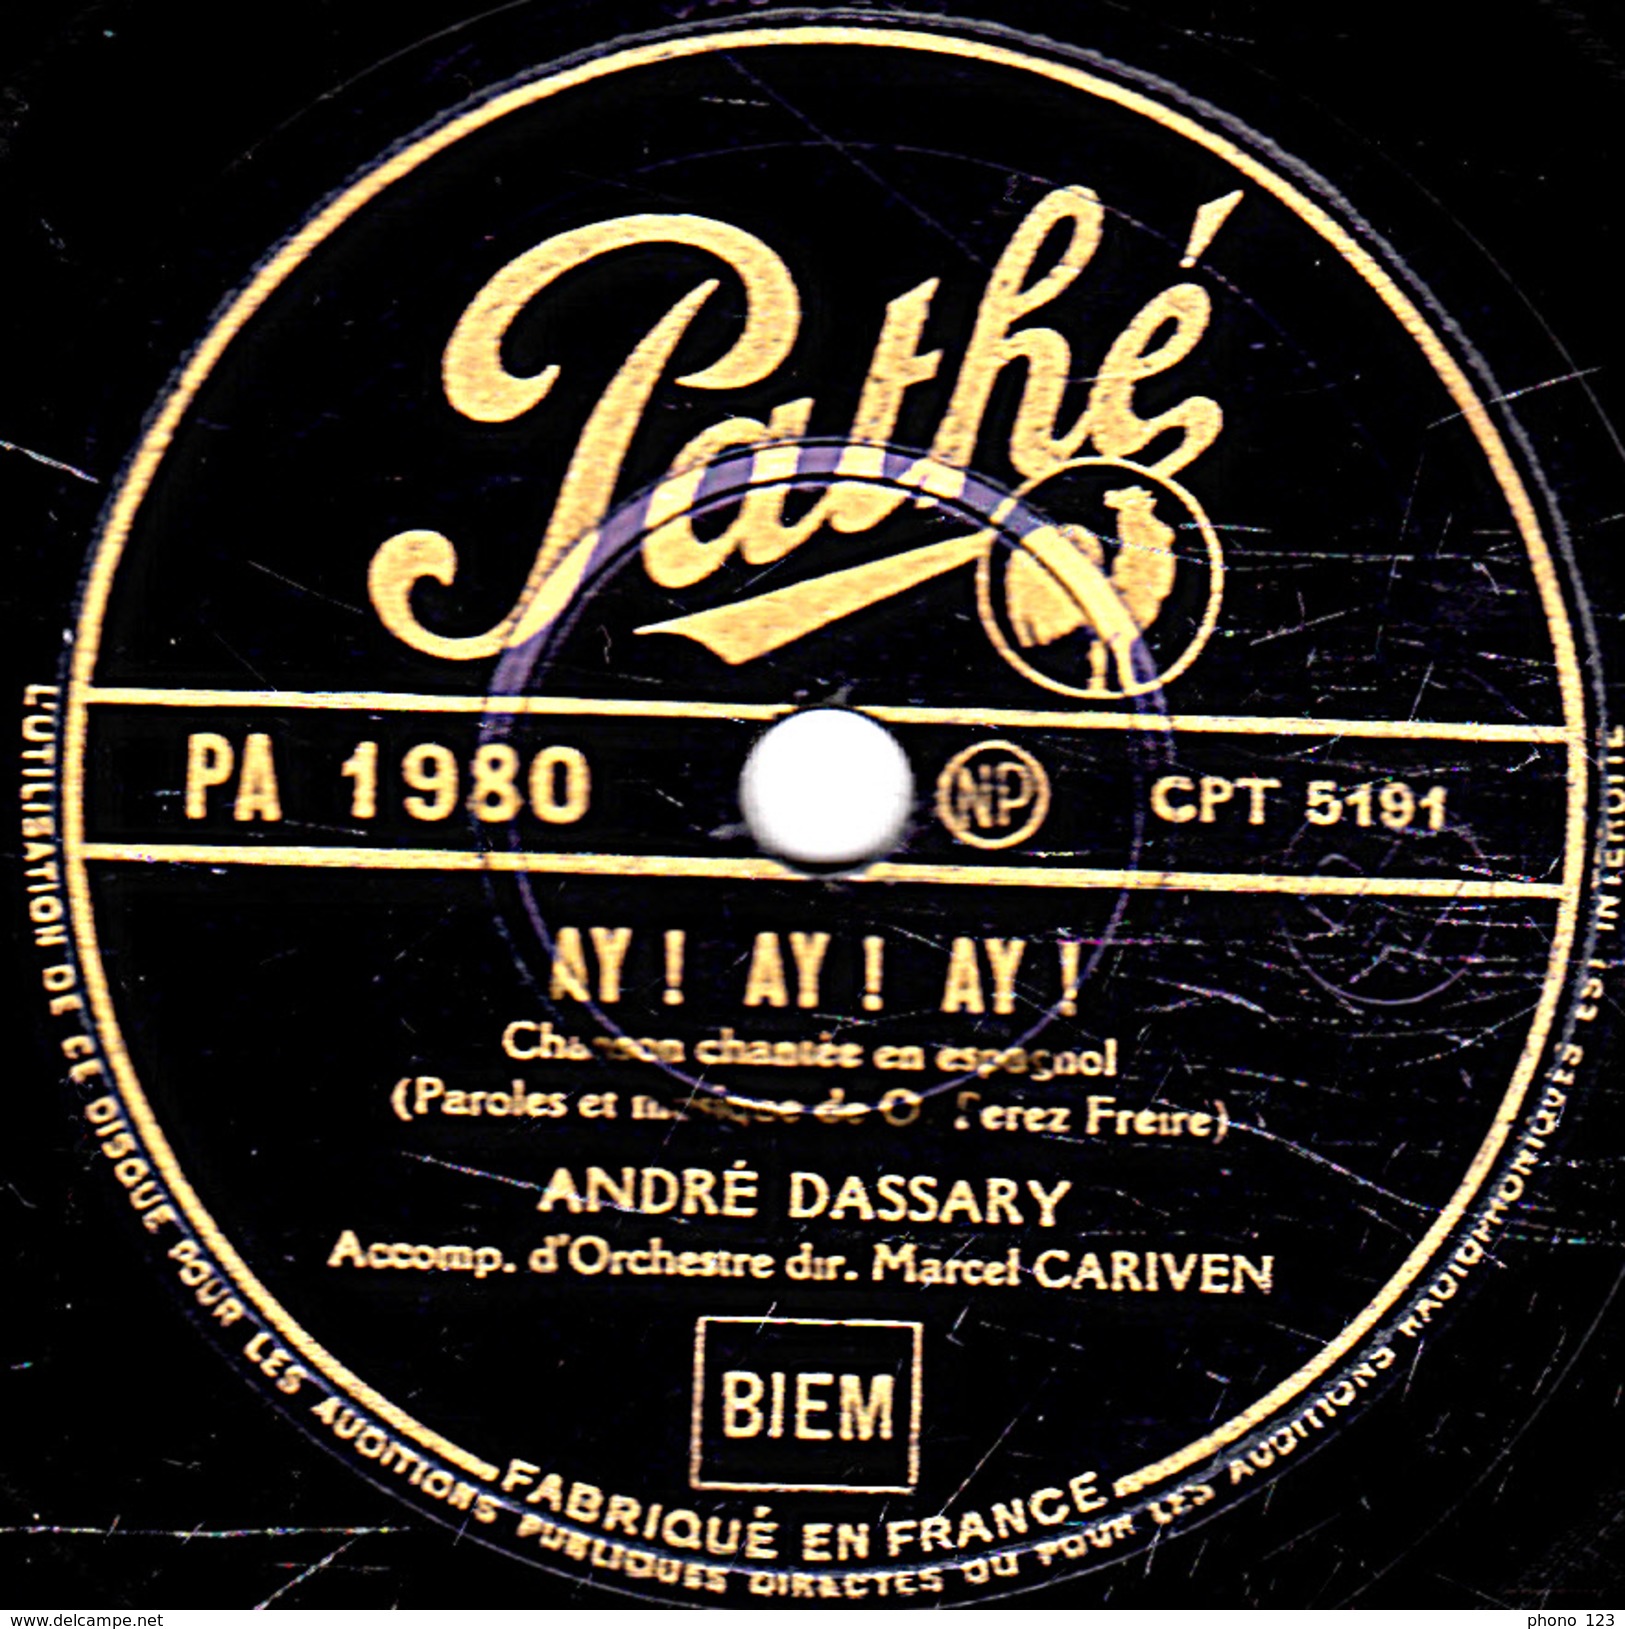 78 T. - 25 Cm - état  B - ANDRE DASSARY - AY ! AY ! AY ! - LA PALOMA - 78 T - Disques Pour Gramophone